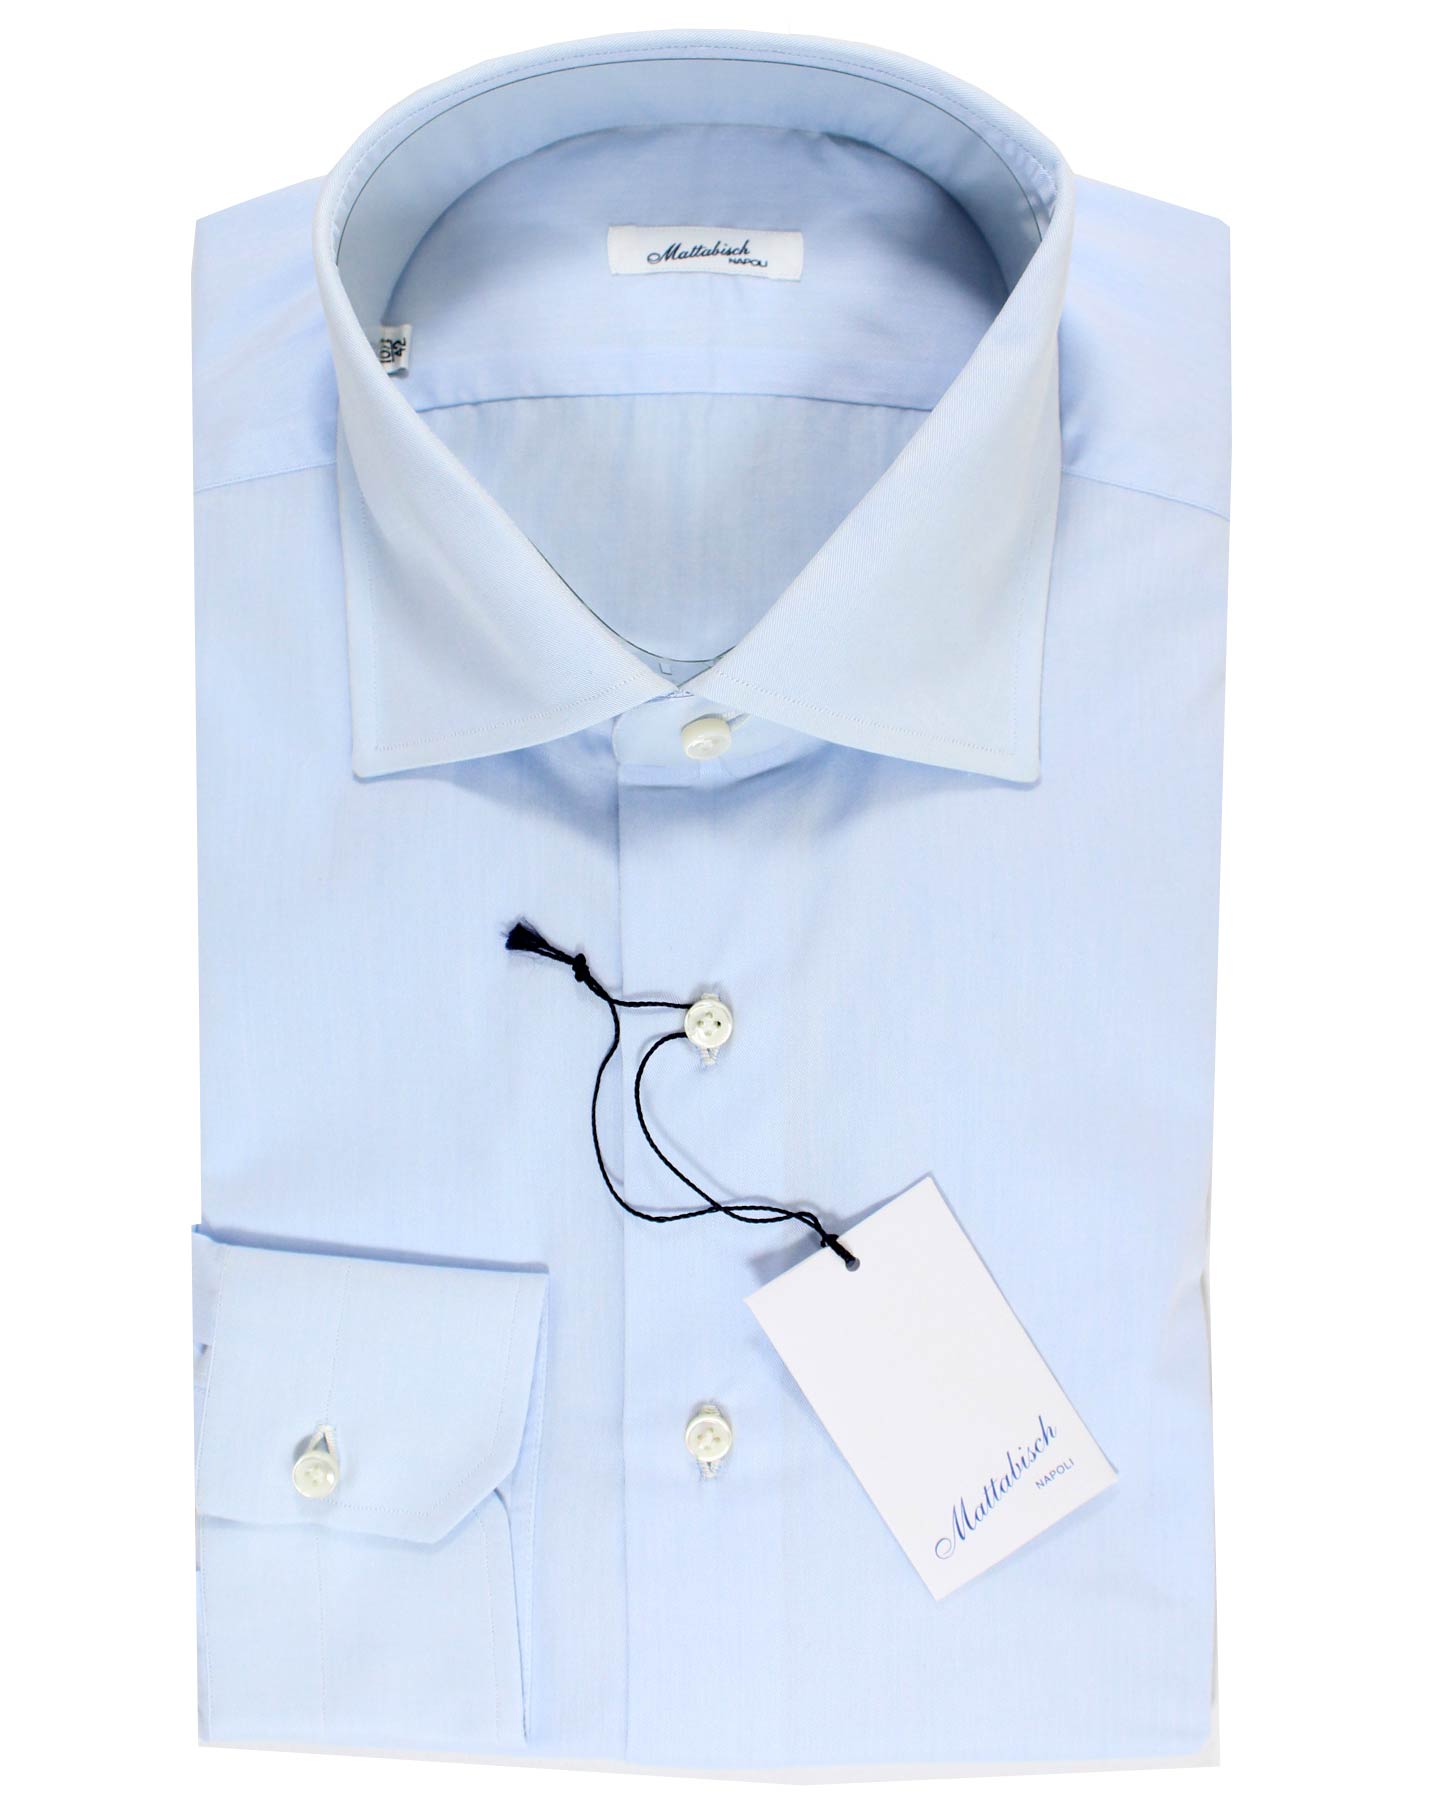 Mattabisch Dress Shirt Solid Blue - Sartorial